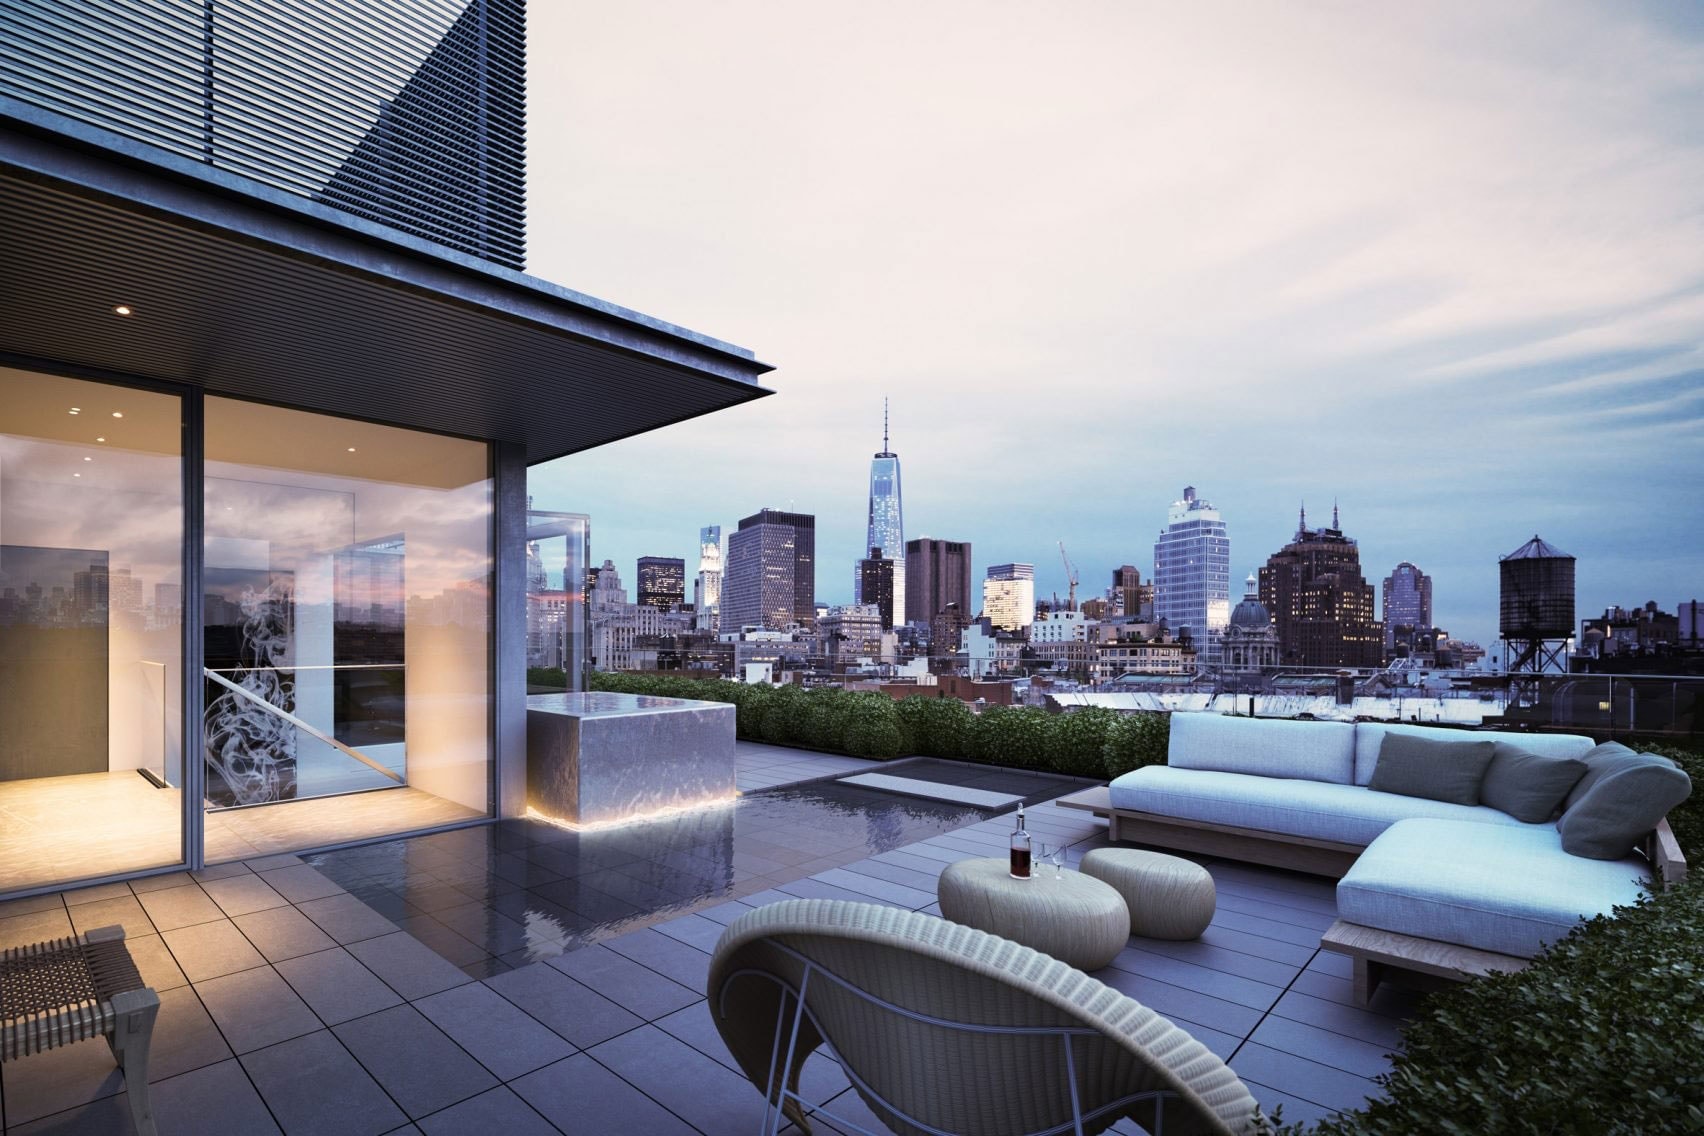 世界的建築家・安藤忠雄による大人のペントハウスが高級住宅街エリザベス通りに完成 無駄な装飾を一切省いたミニマルテイストな空間こそ、ニューヨーカーの憧れ